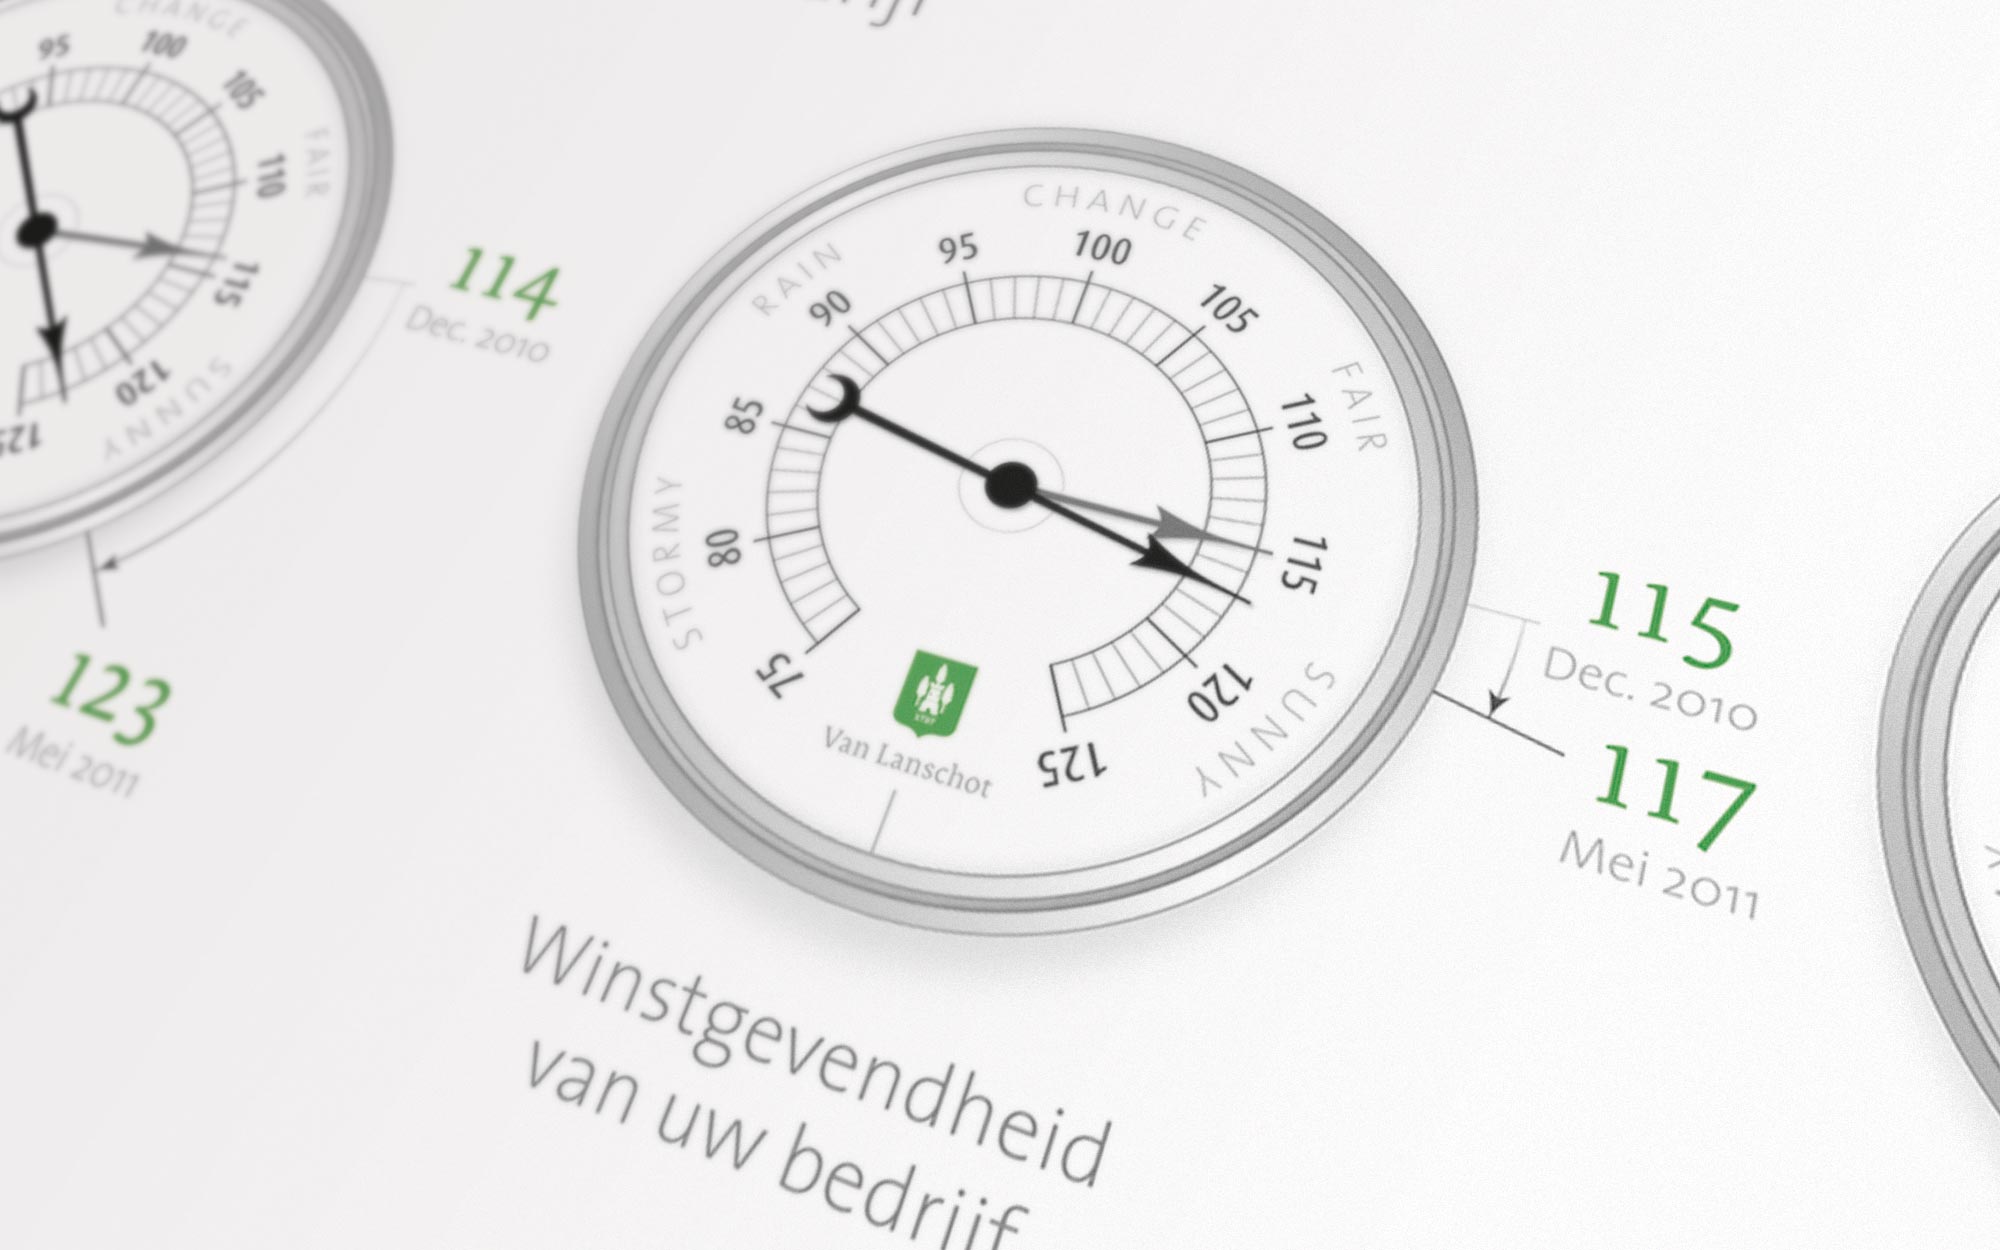 Barometer Van Lanschot infographic JAgd ontwerp detail